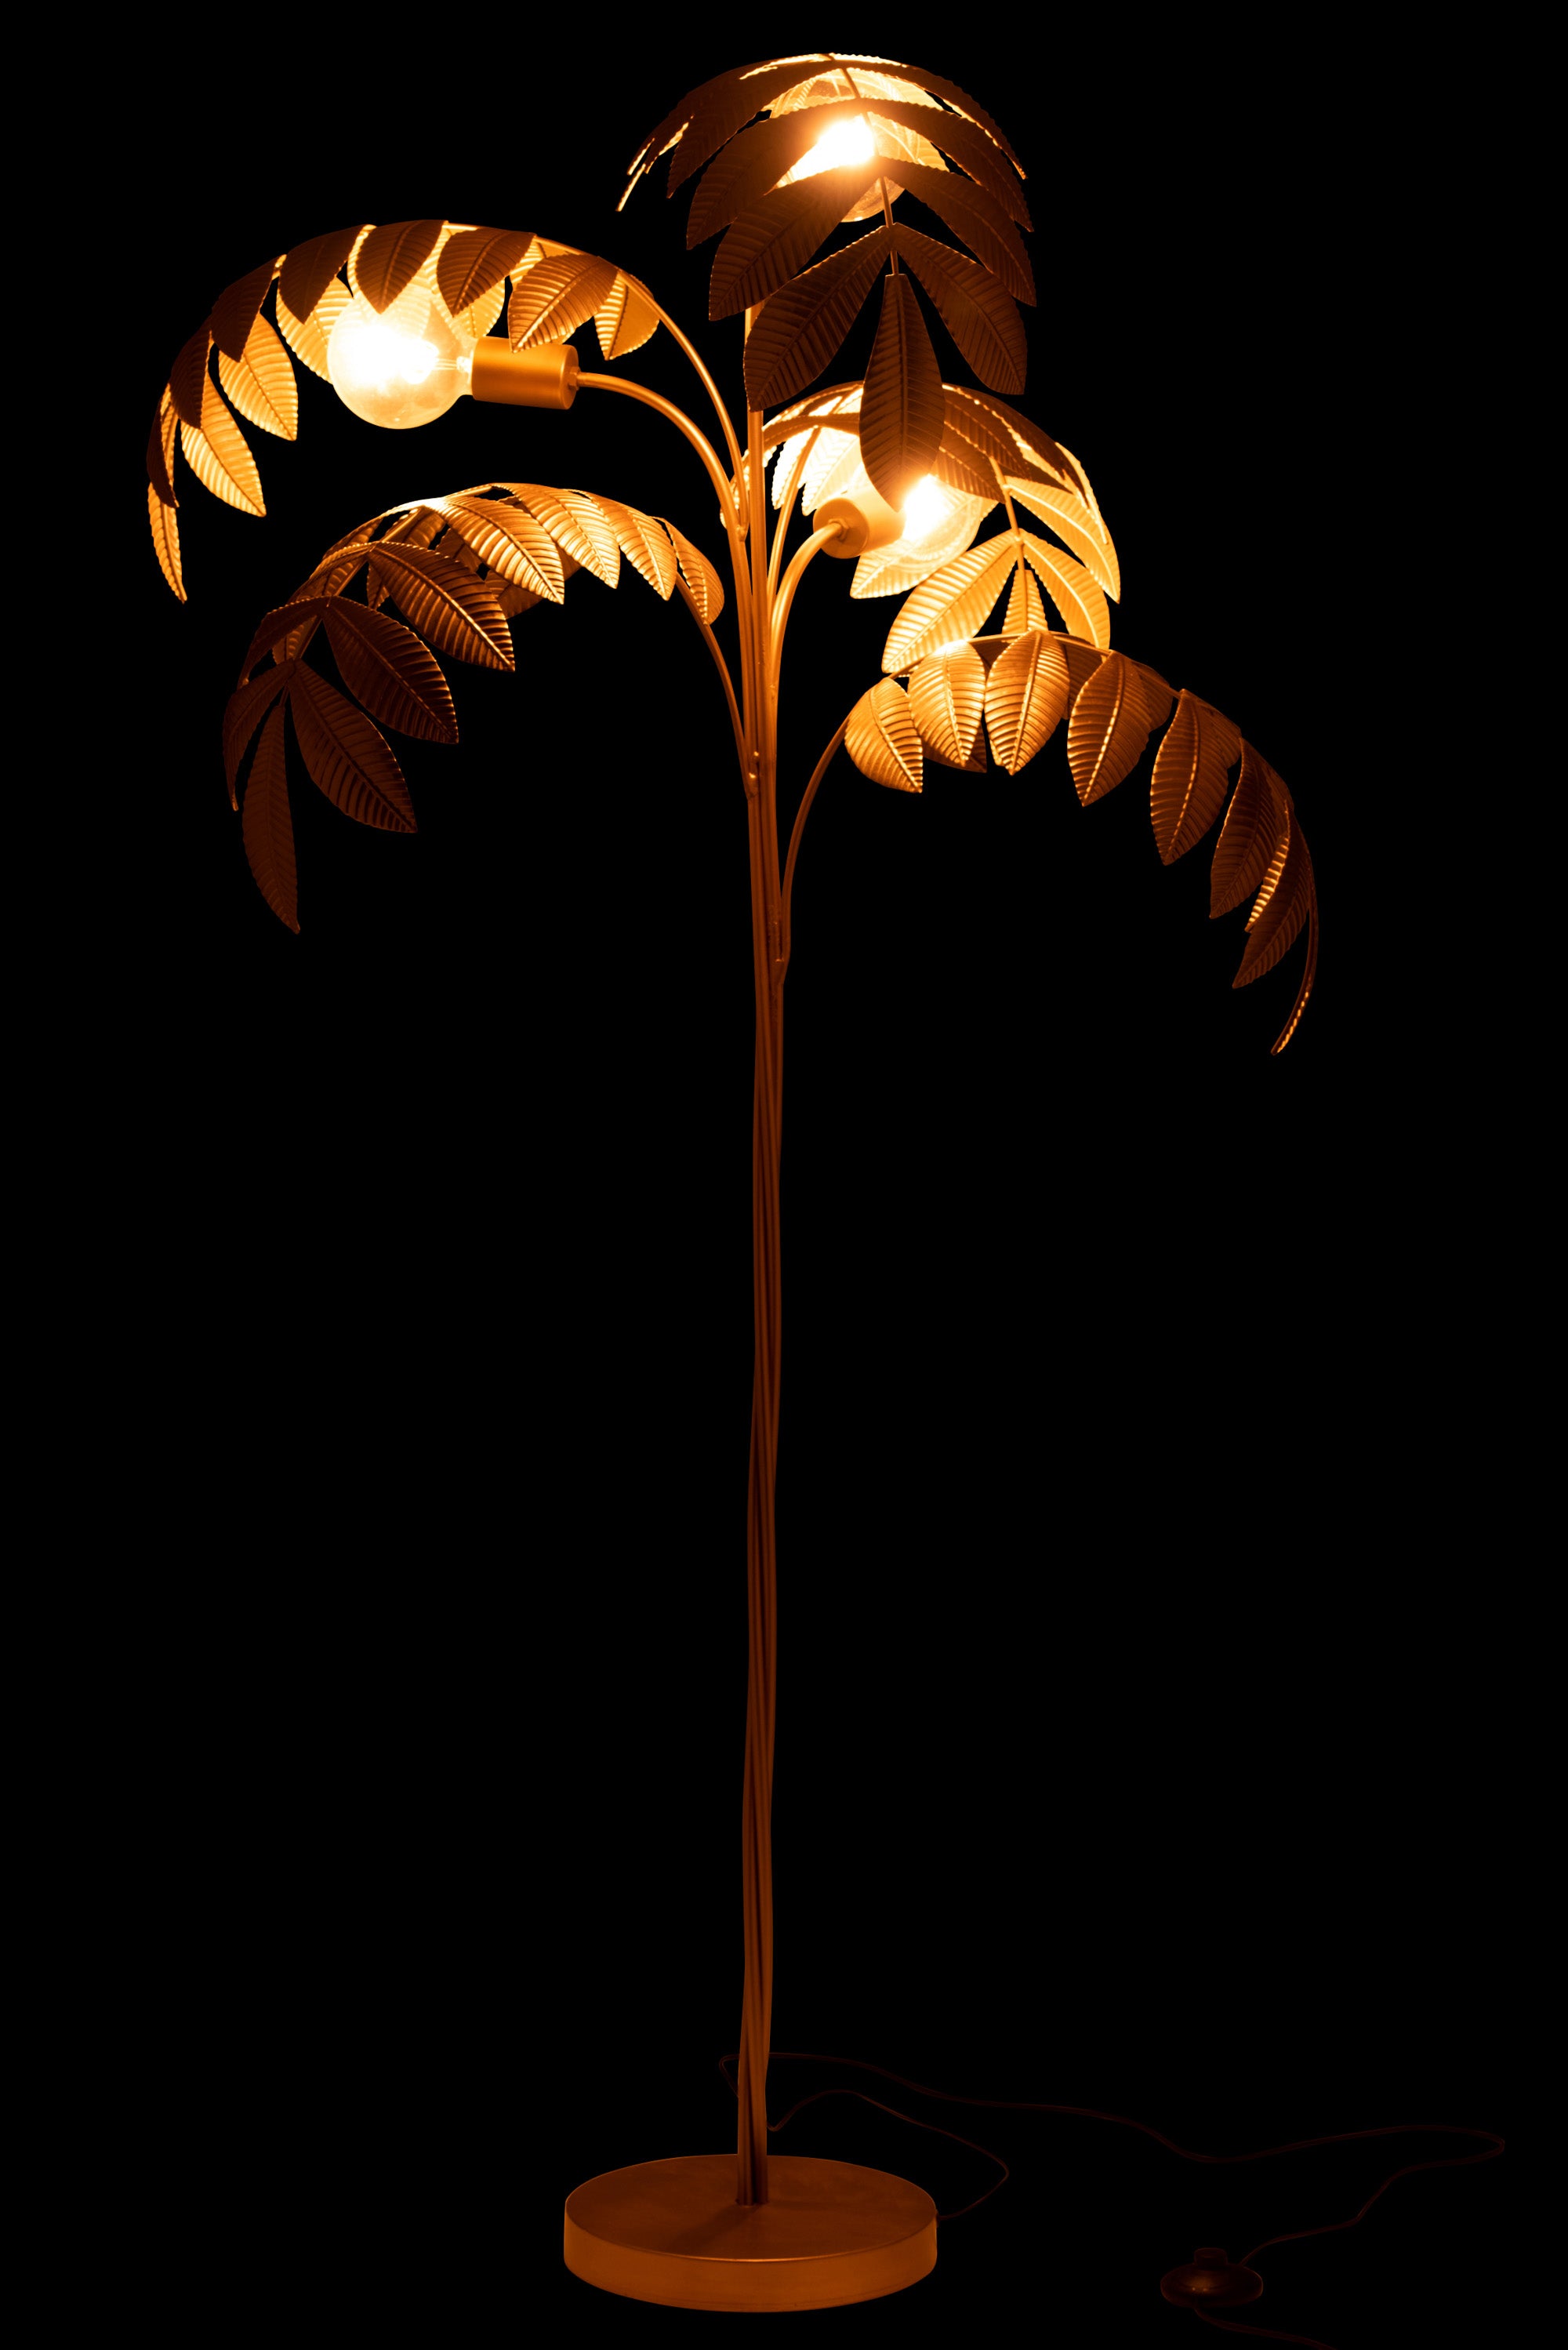 Stehlampe Palme Zink Gold - stilvolle Beleuchtung im tropischen Design